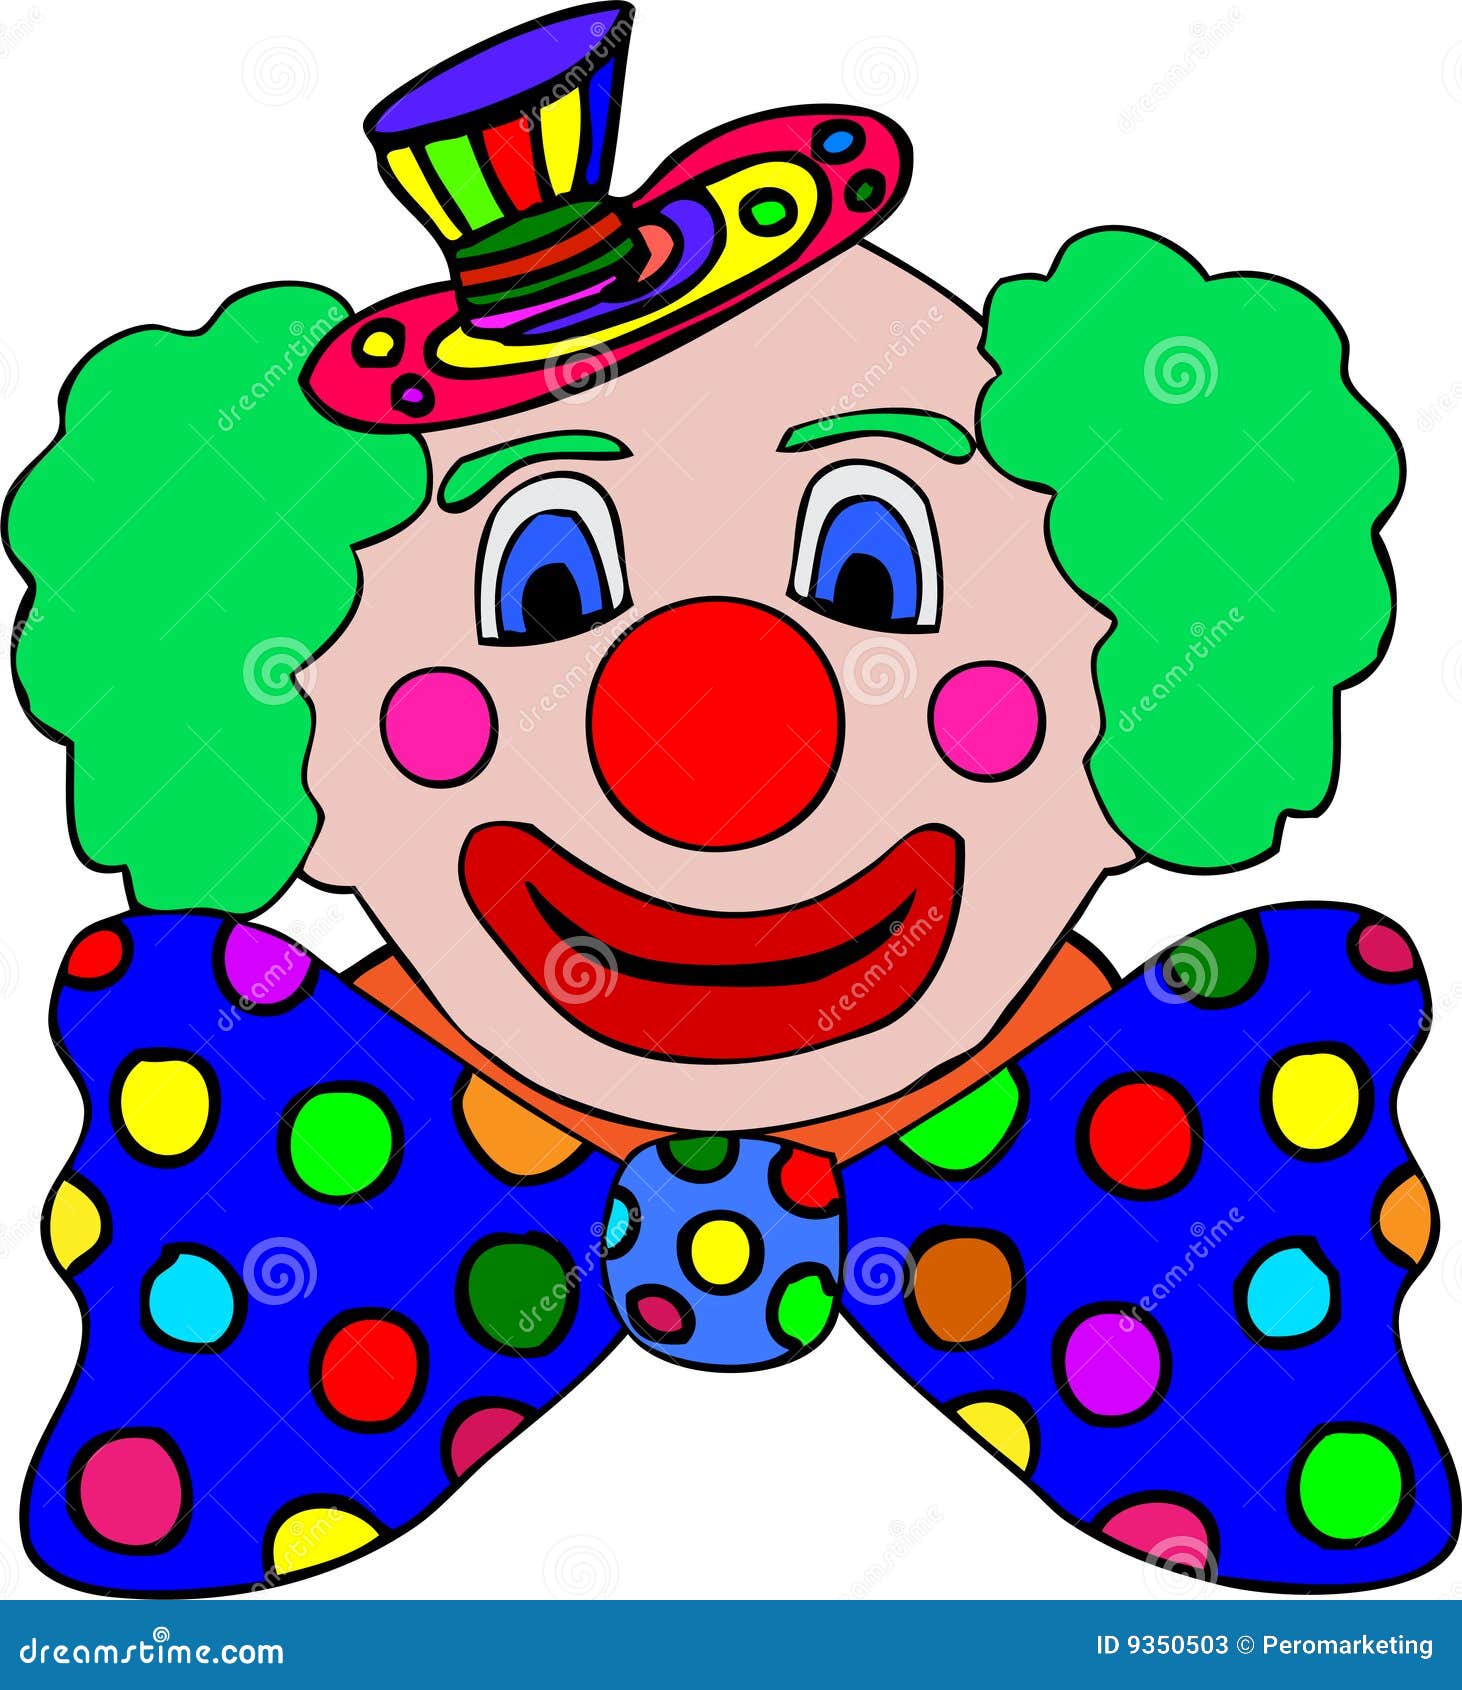 clipart clown couleur - photo #31